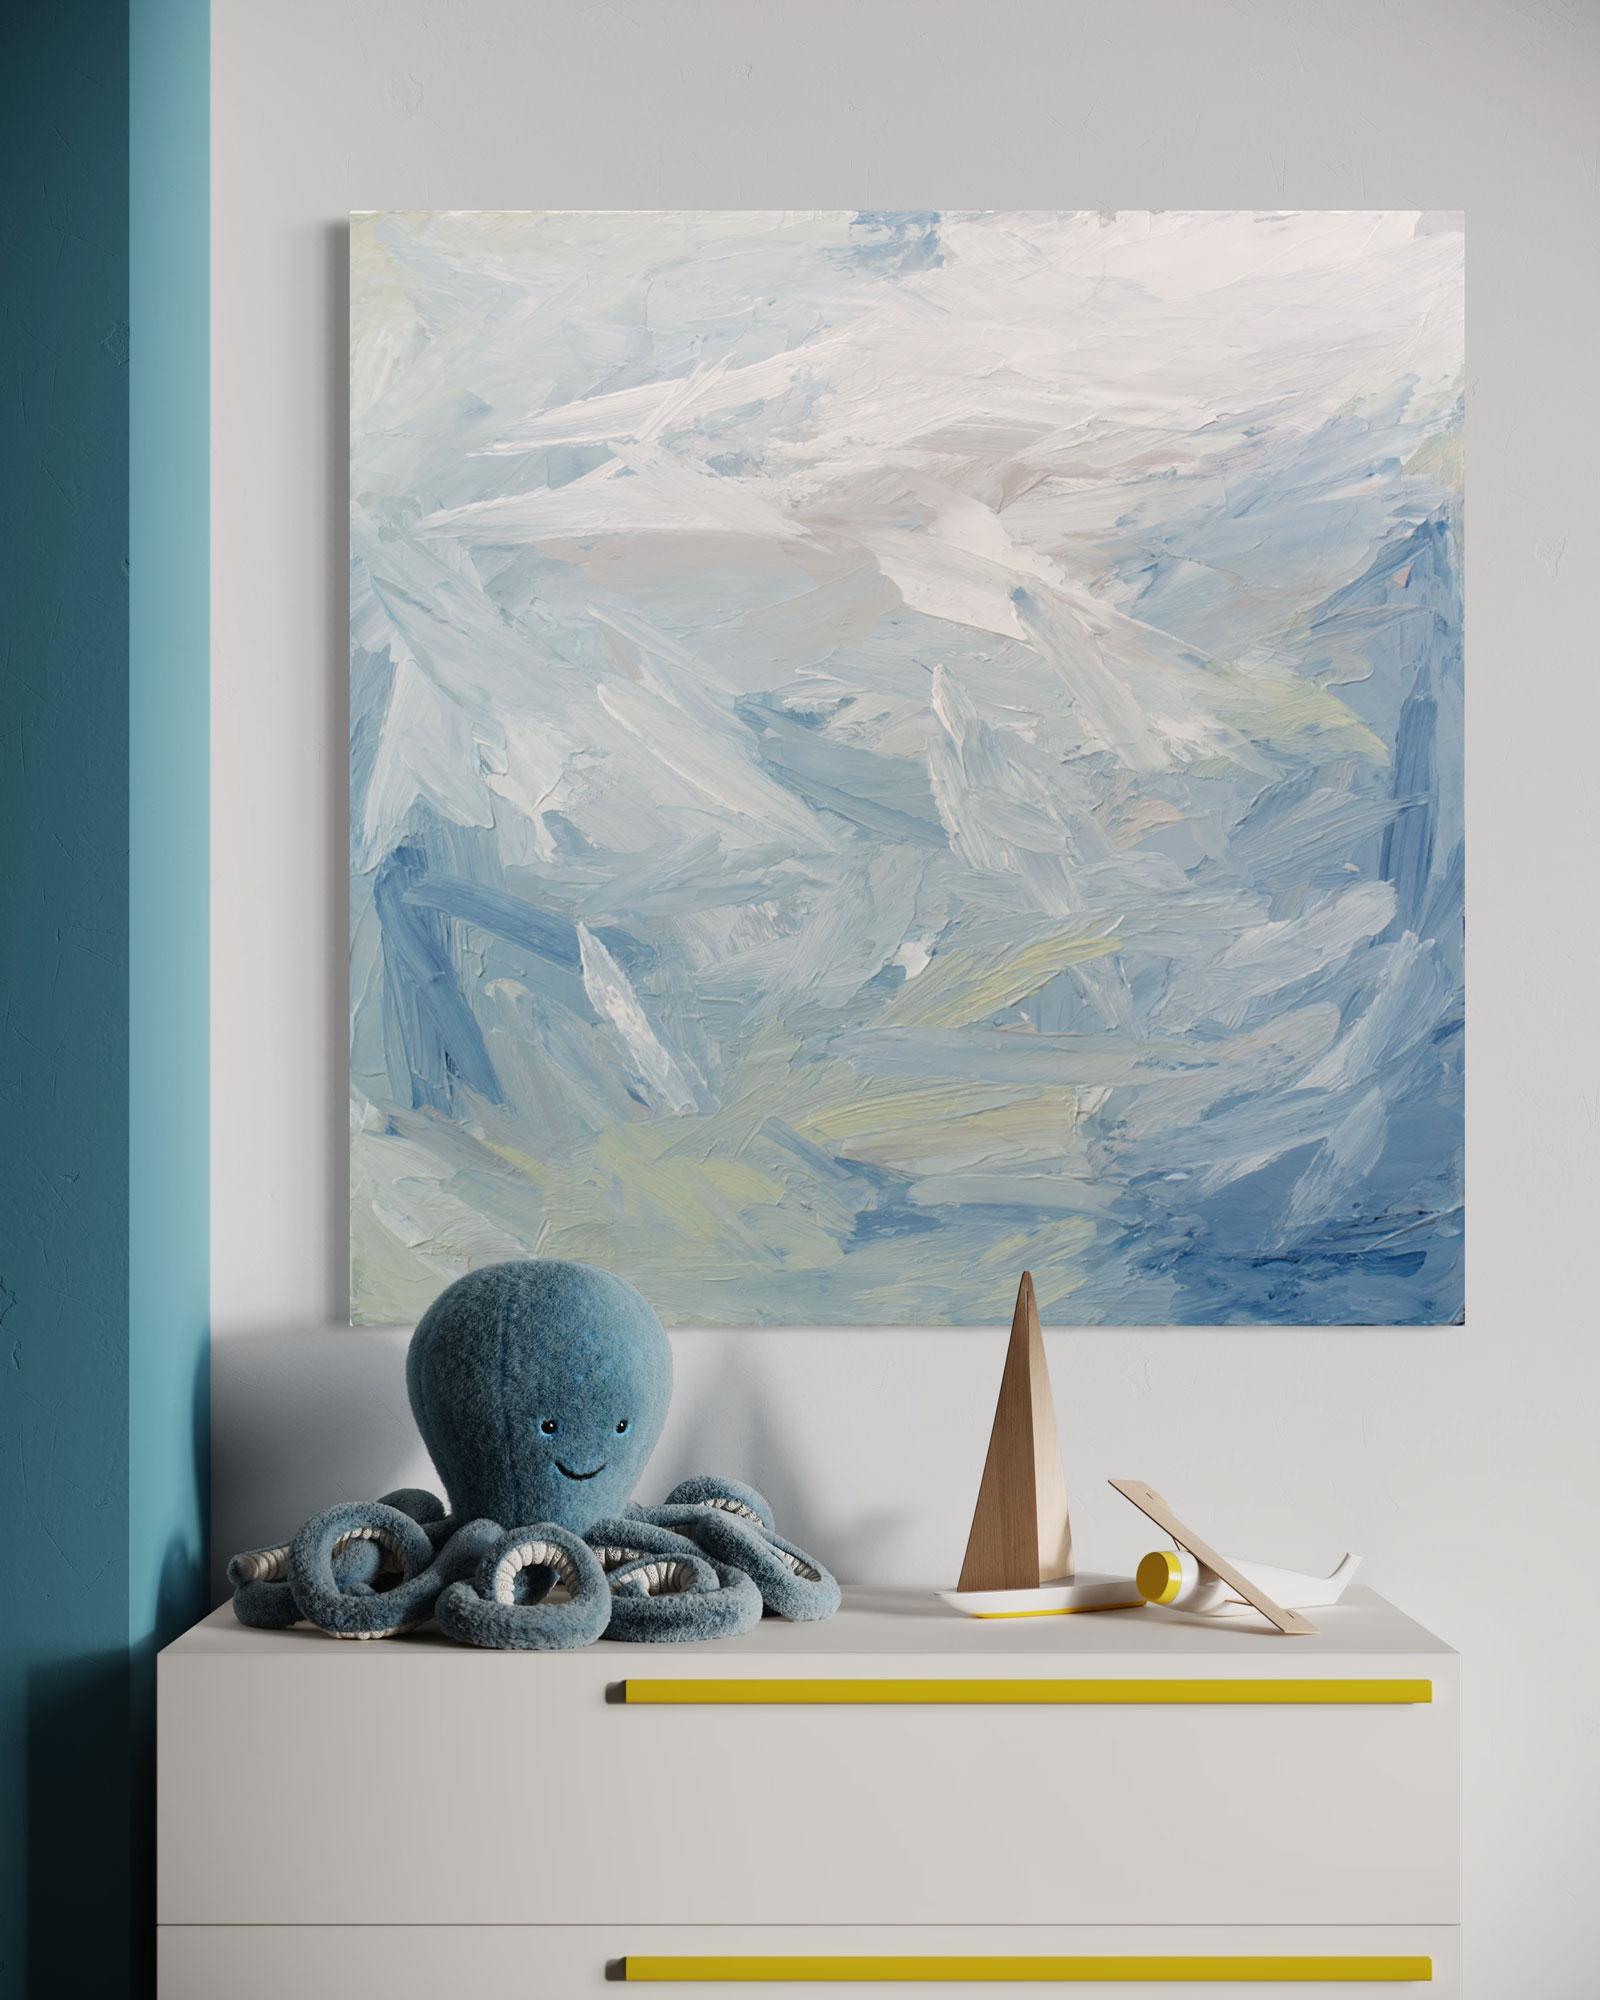 Cette peinture abstraite de Teodora Guererra présente une palette de bleu clair, de vert et de blanc. L'artiste applique d'épaisses touches de peinture à l'aide d'un couteau à palette, par larges coups de pinceau, sur une toile emballée, créant